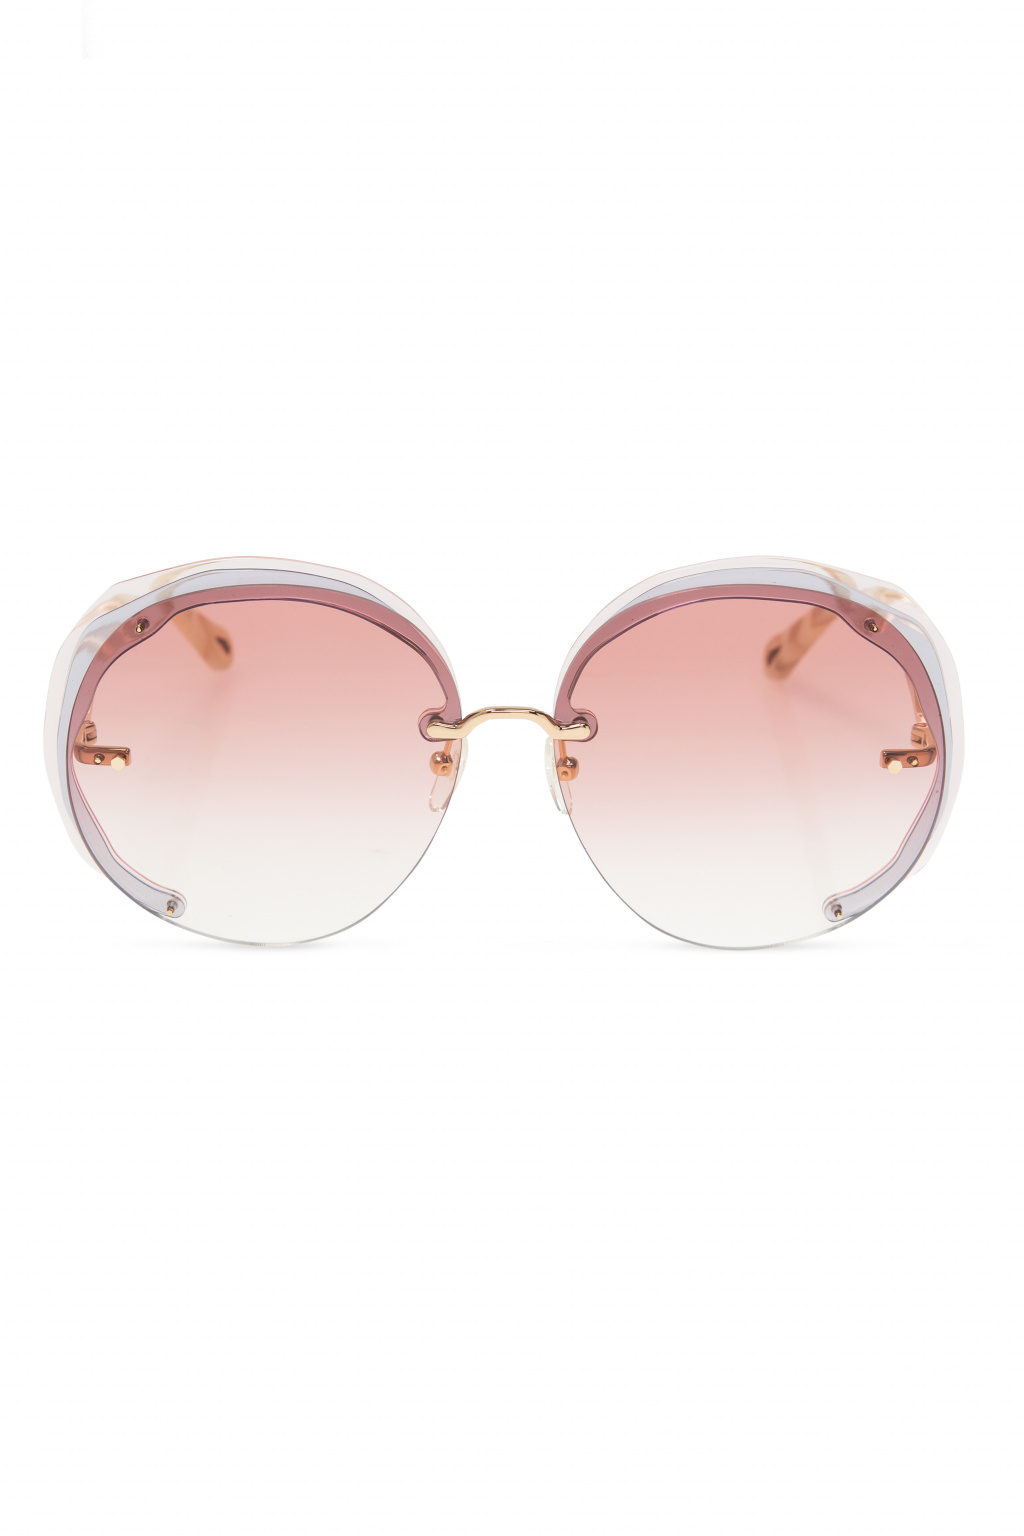 Chloé Dans M01 cat-eye frame sunglasses